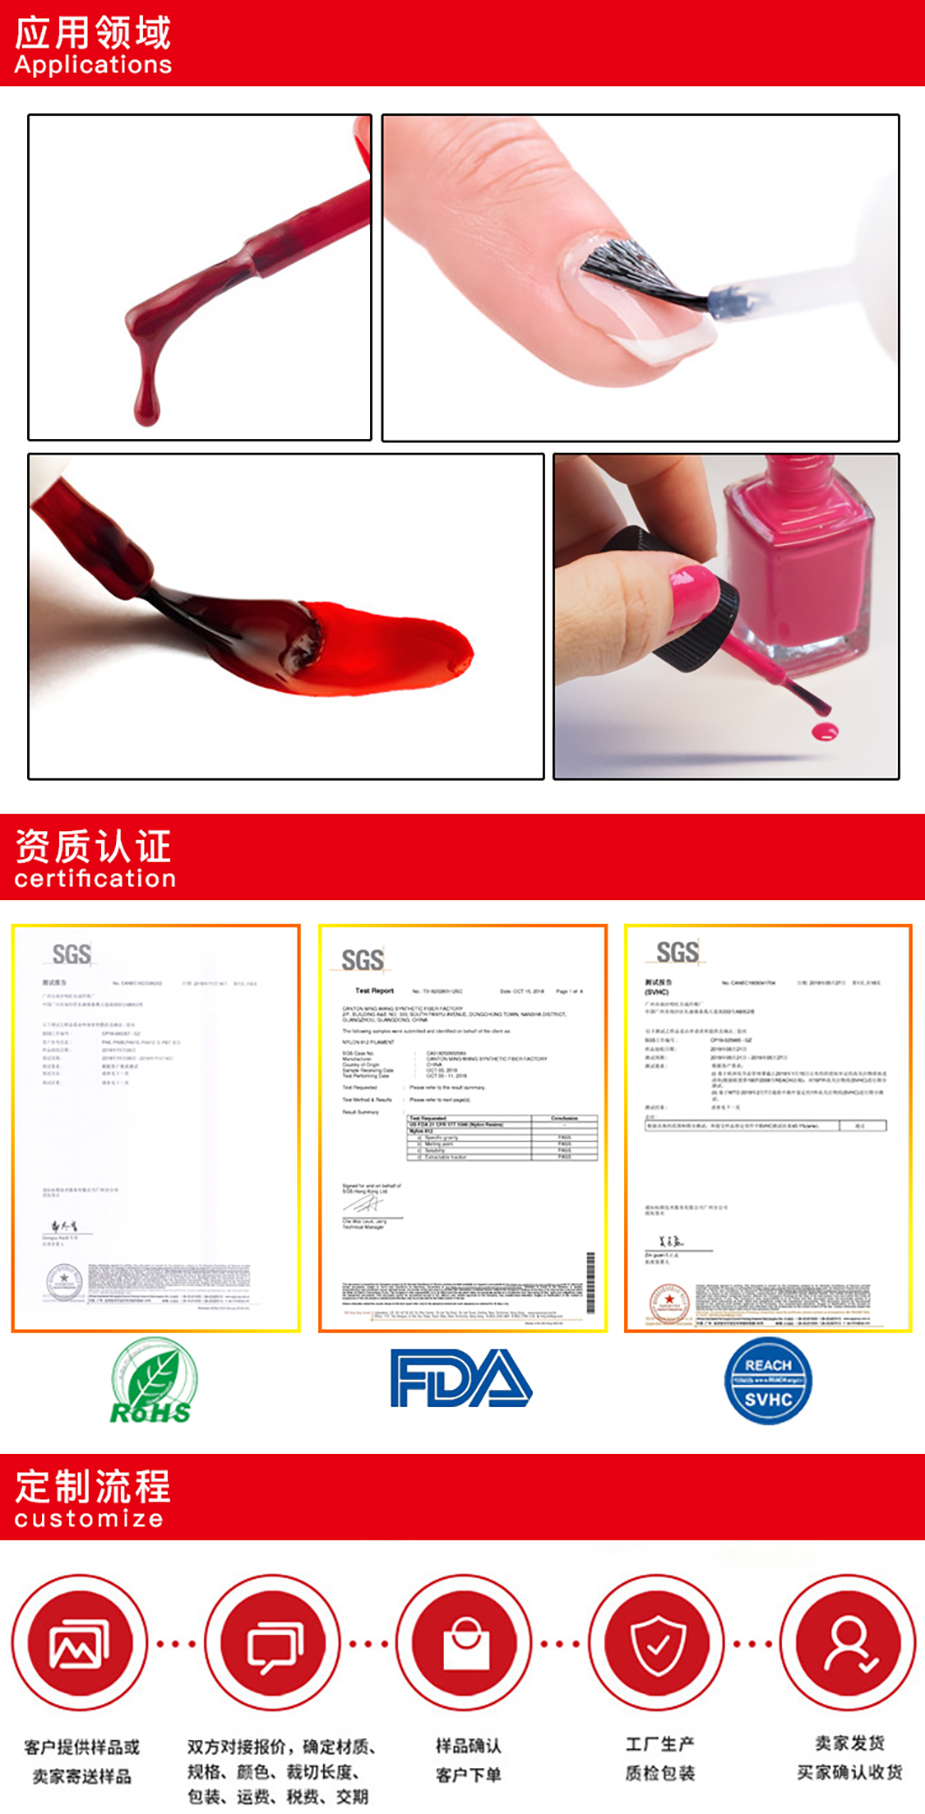 指甲油刷毛应用领域和产品认证.jpg